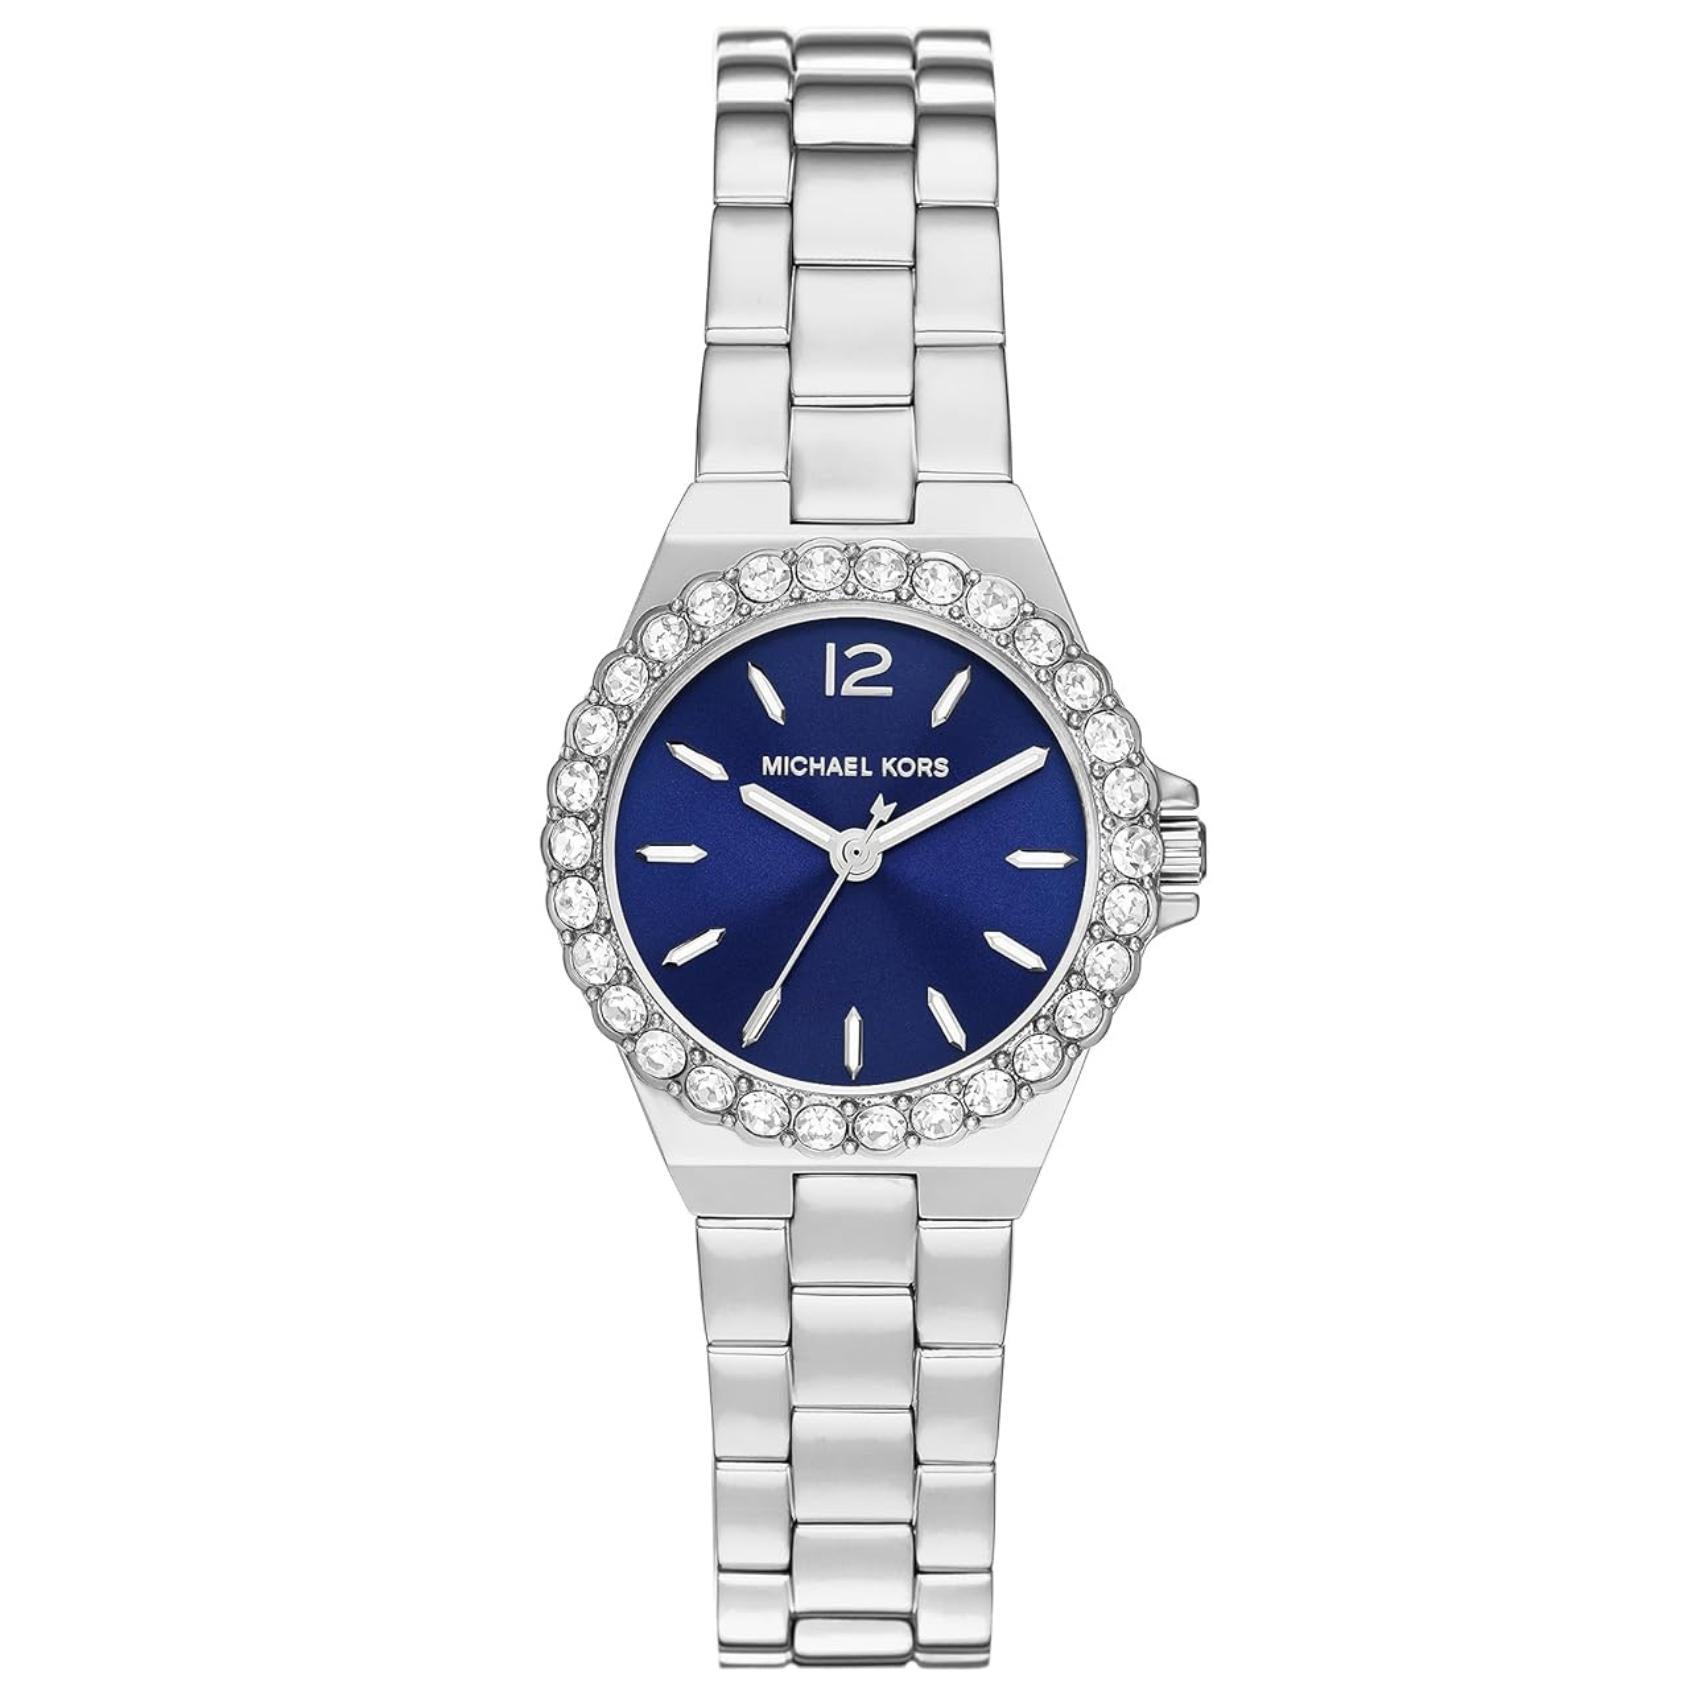 Γυναικείο ρολόι Michael Kors Lennox MK7397 με ασημί ατσάλινο μπρασελέ, μπλε καντράν και στρογγυλό στεφάνι 30mm με ζιργκόν.